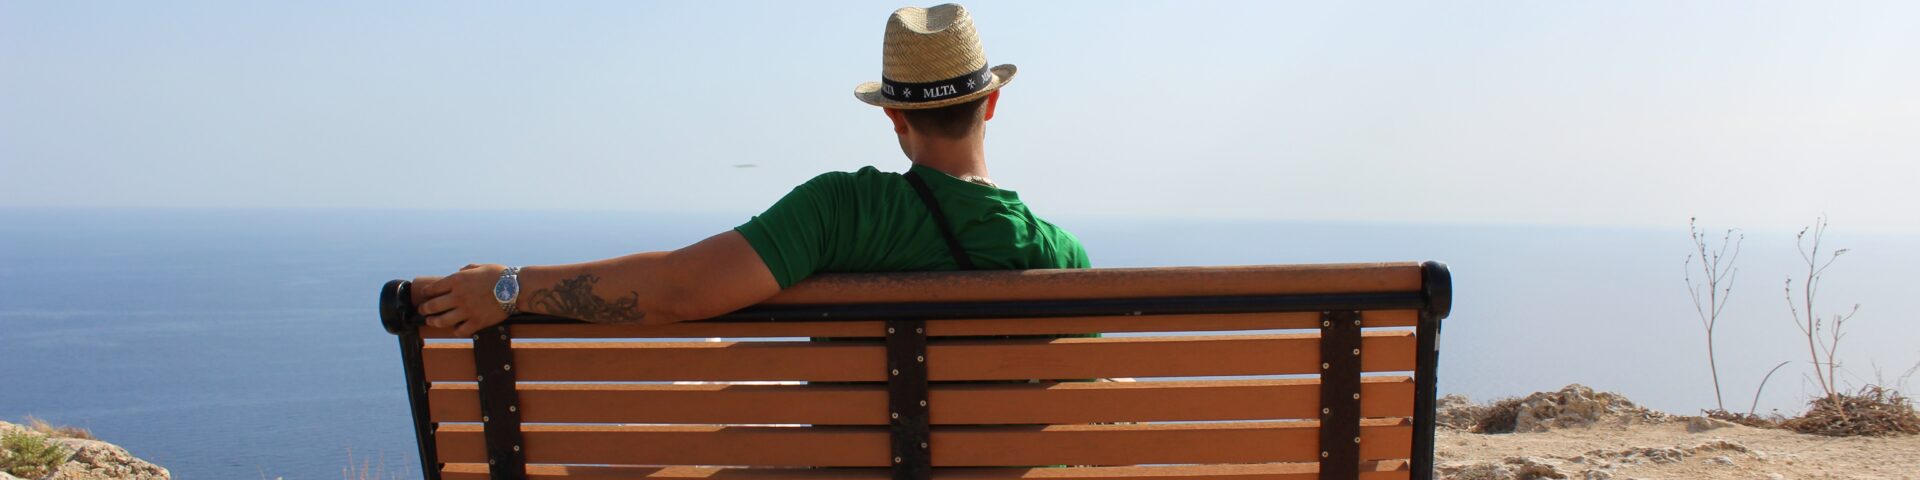 Ma zit op bankje en kijkt naar de zee. als illustratie bij blog over variatie pensioen